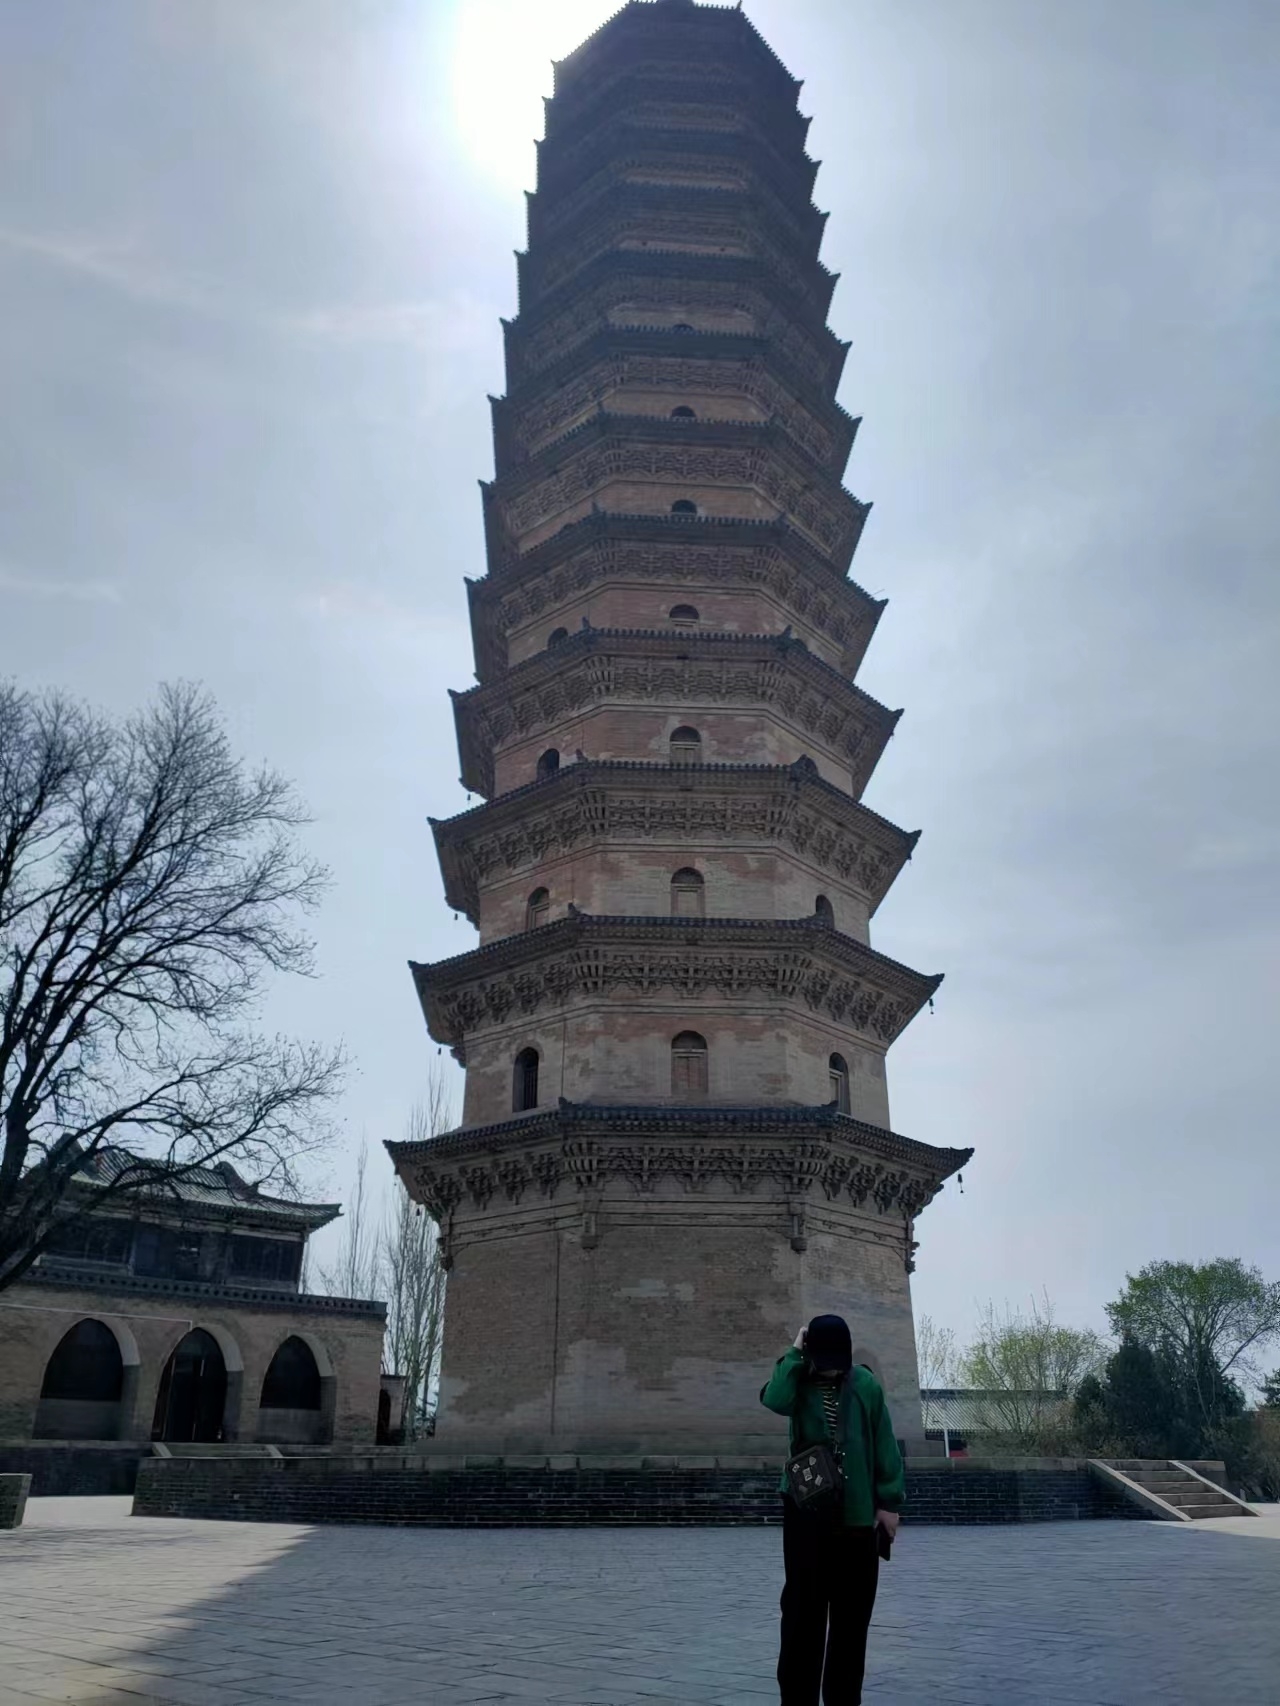 #探访历史名胜古迹 今日去走访了 太原双塔寺 从老远就能看到两座塔宏伟的矗立于景观中心  双塔寺： 